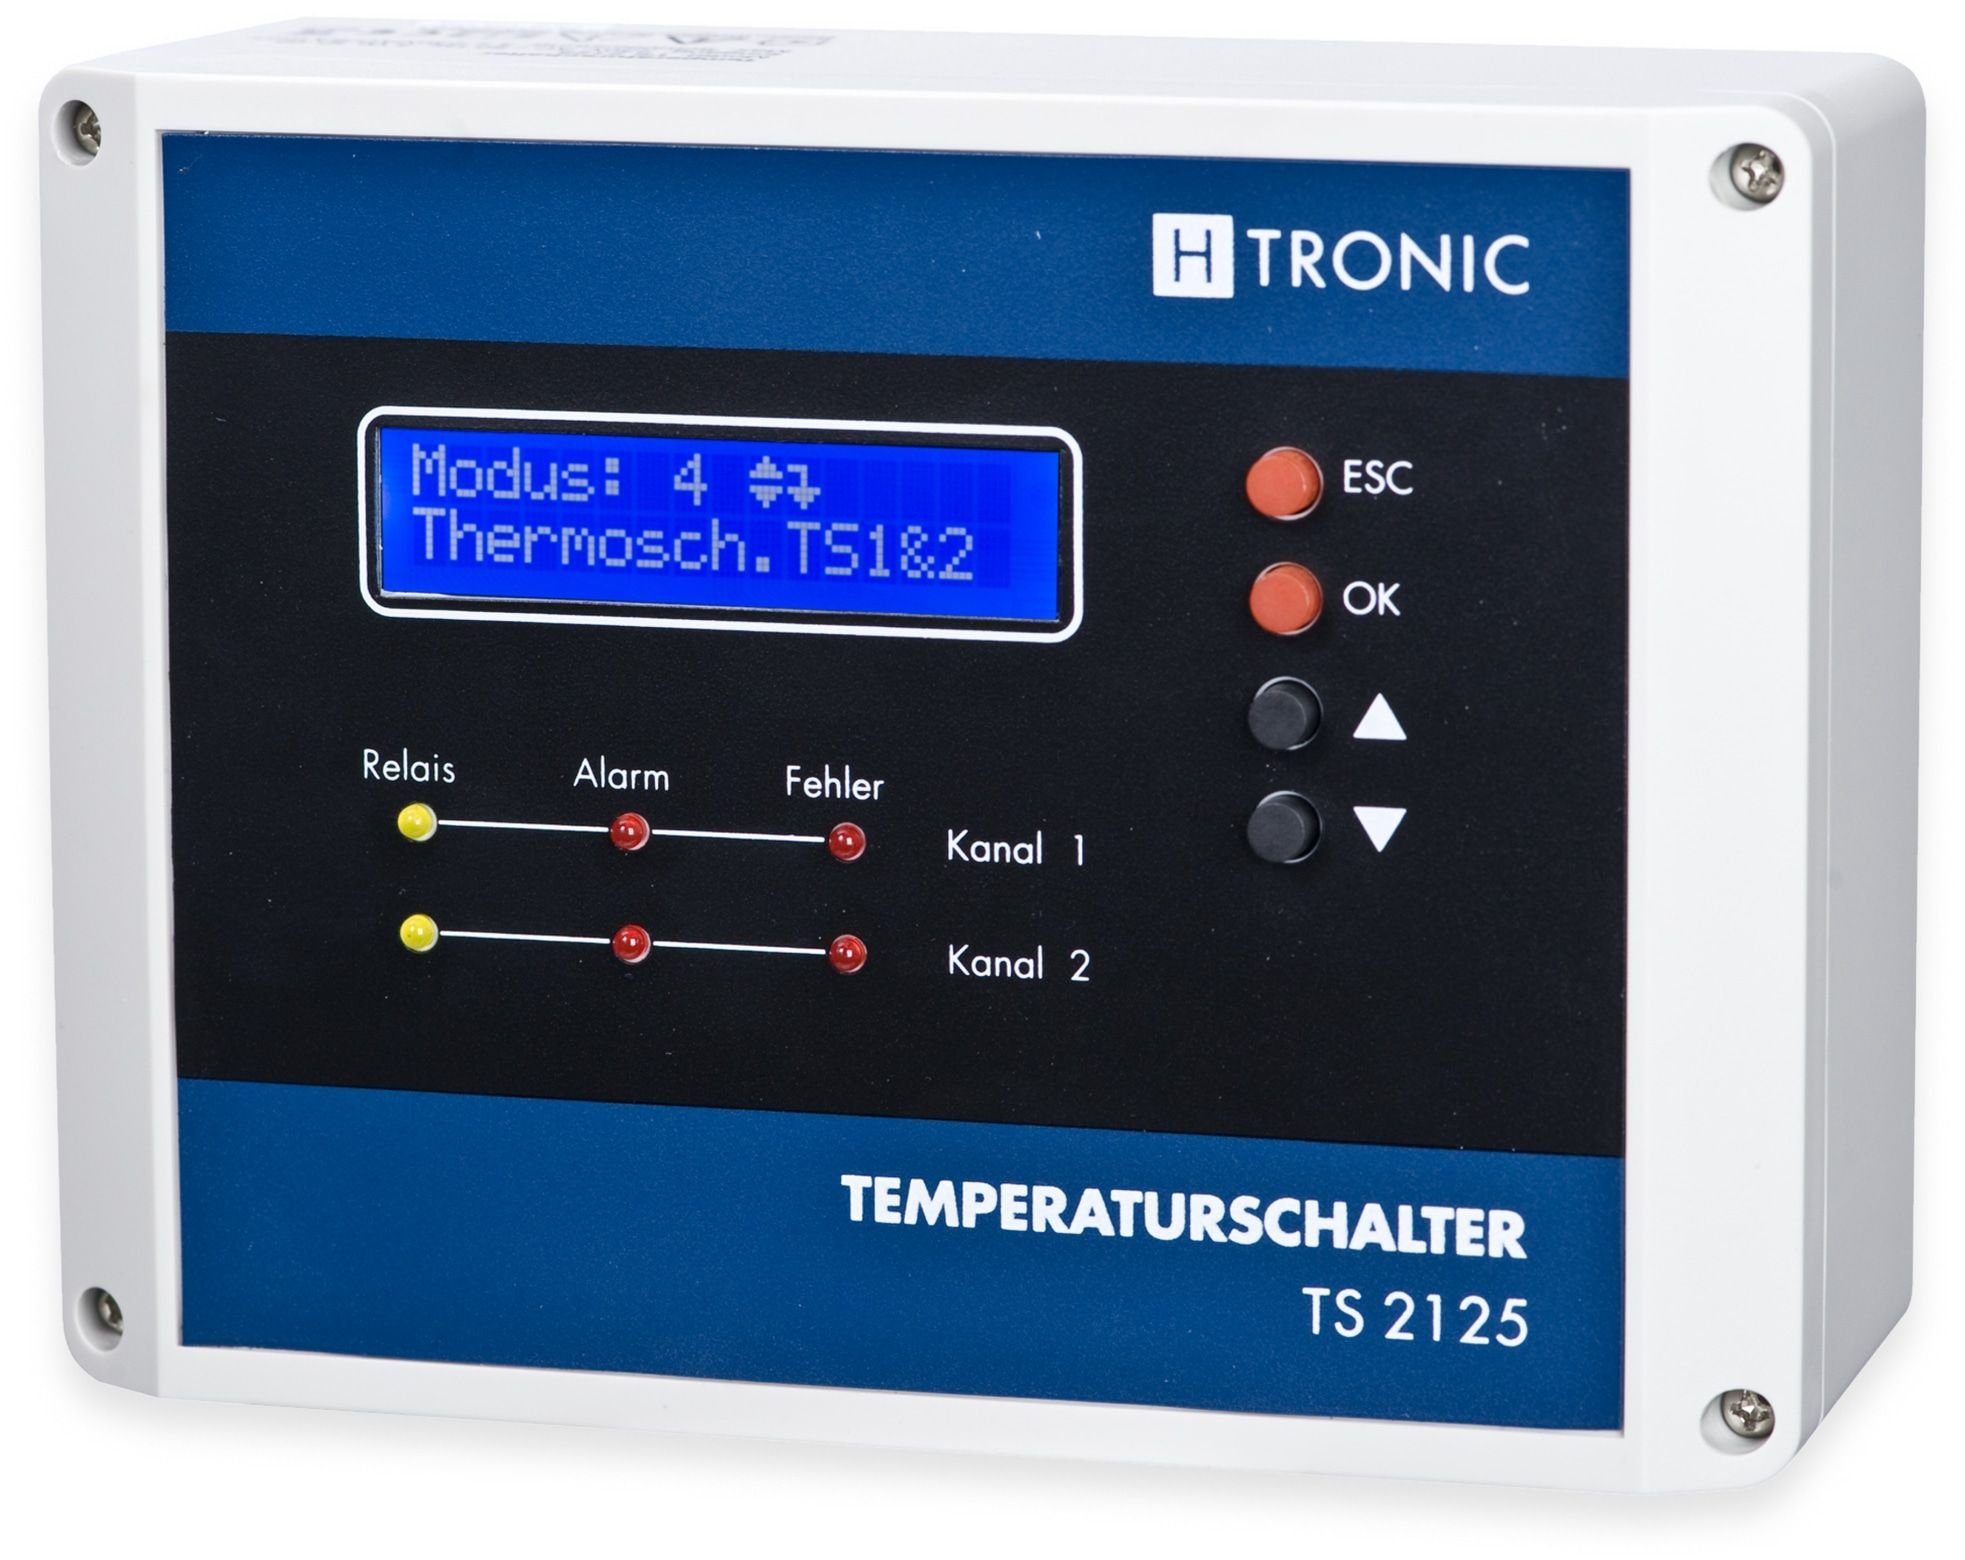 H-Tronic Heizkörperthermostat H-TRONIC Temperaturschalter TS 2125